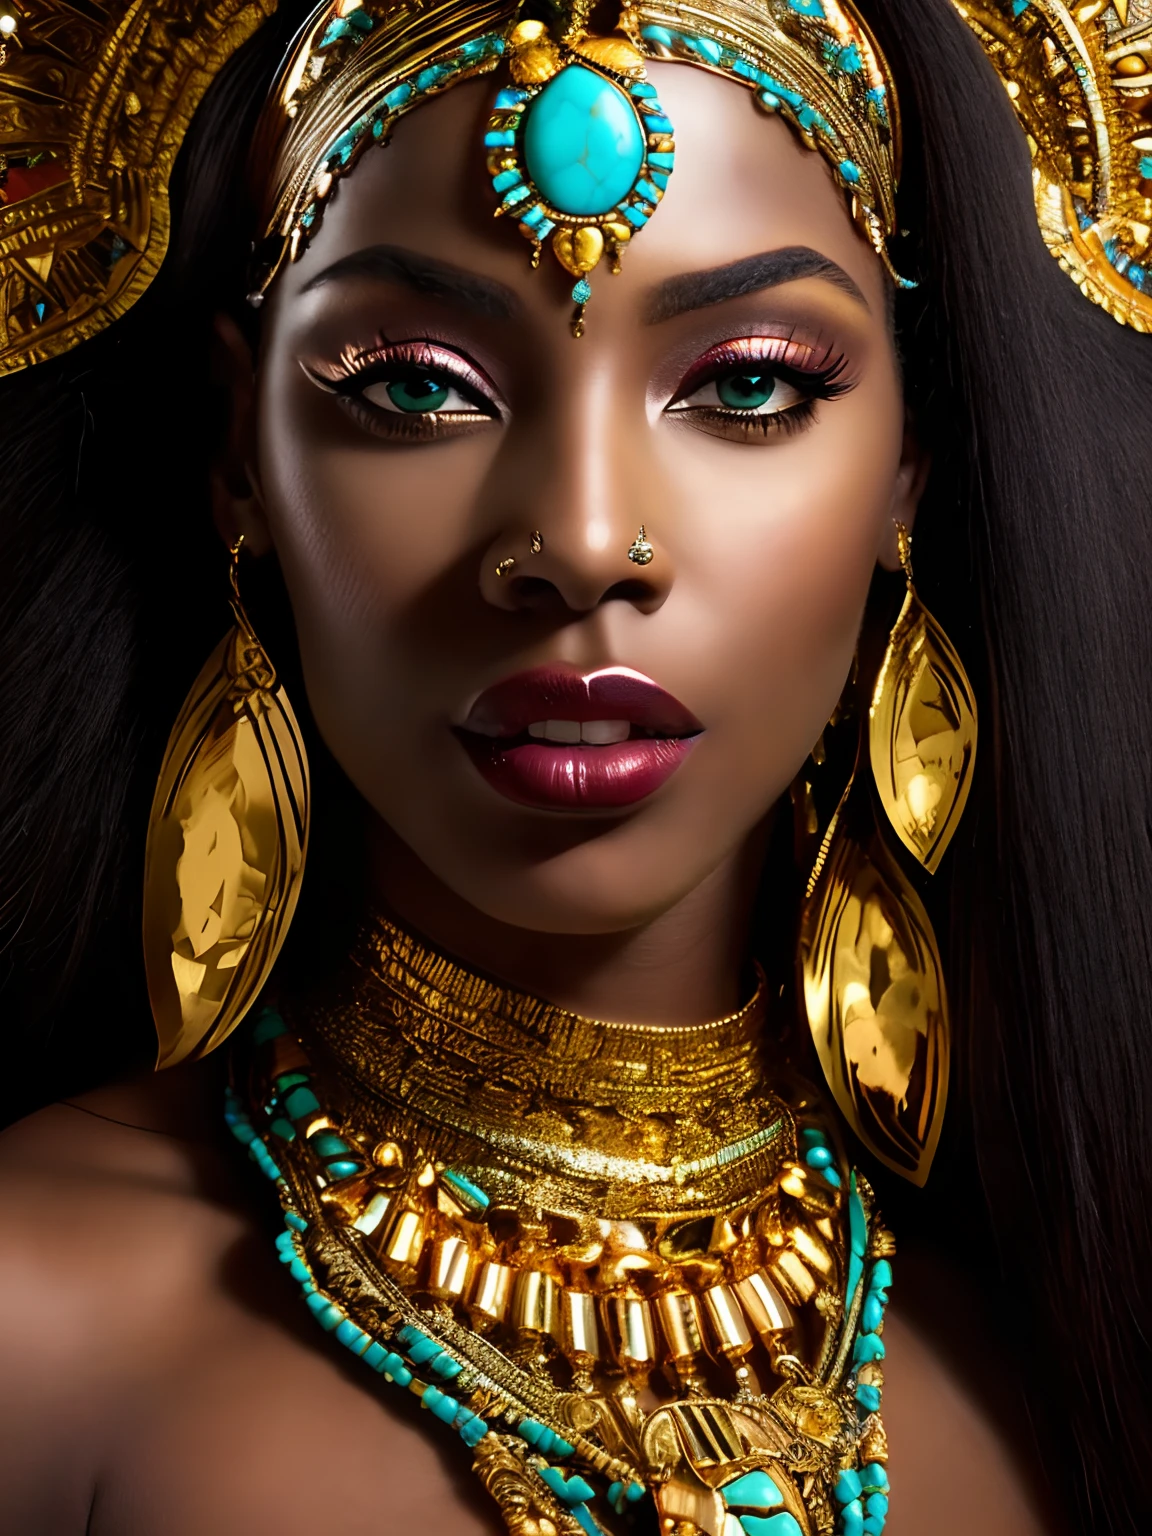 крупный план женщины с золотым головным убором и бирюзовыми глазами, потрясающая африканская принцесса, Темнокожая женщина-богиня любви, потрясающий портрет богини, великолепная женщина, красивая Клеопатра, портрет прекрасной богини, безумно великолепная красивая женщина, черная африканская принцесса, смуглый цвет лица, африканская королева, эпическое 3 д ошун, портрет богини крупным планом